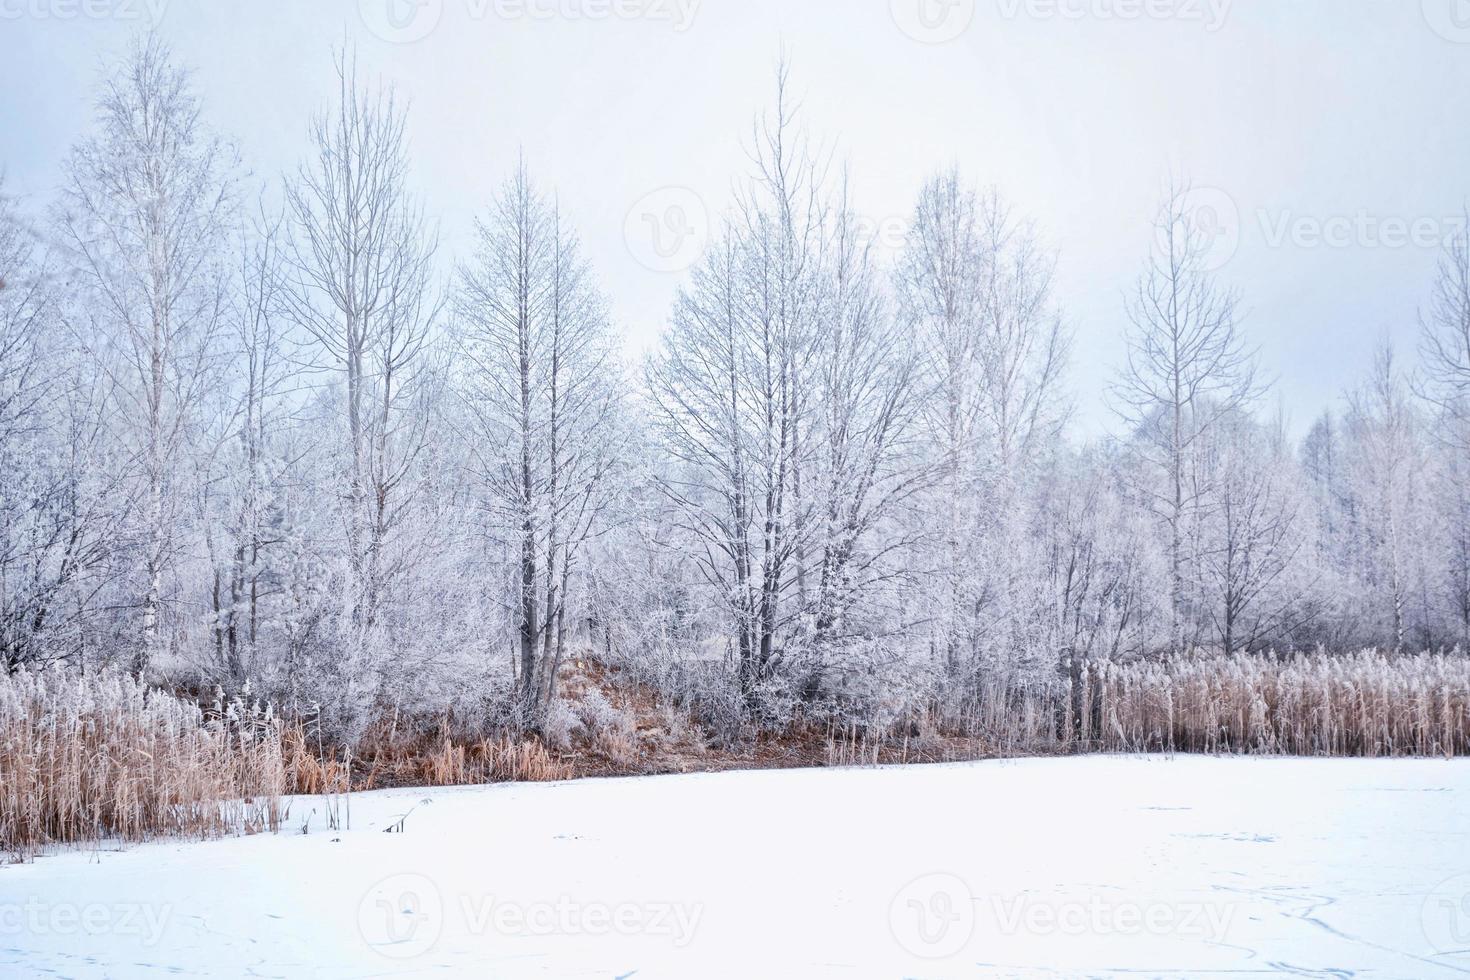 arrière-plan flou de Noël. arbres dans la neige. forêt d'hiver photo